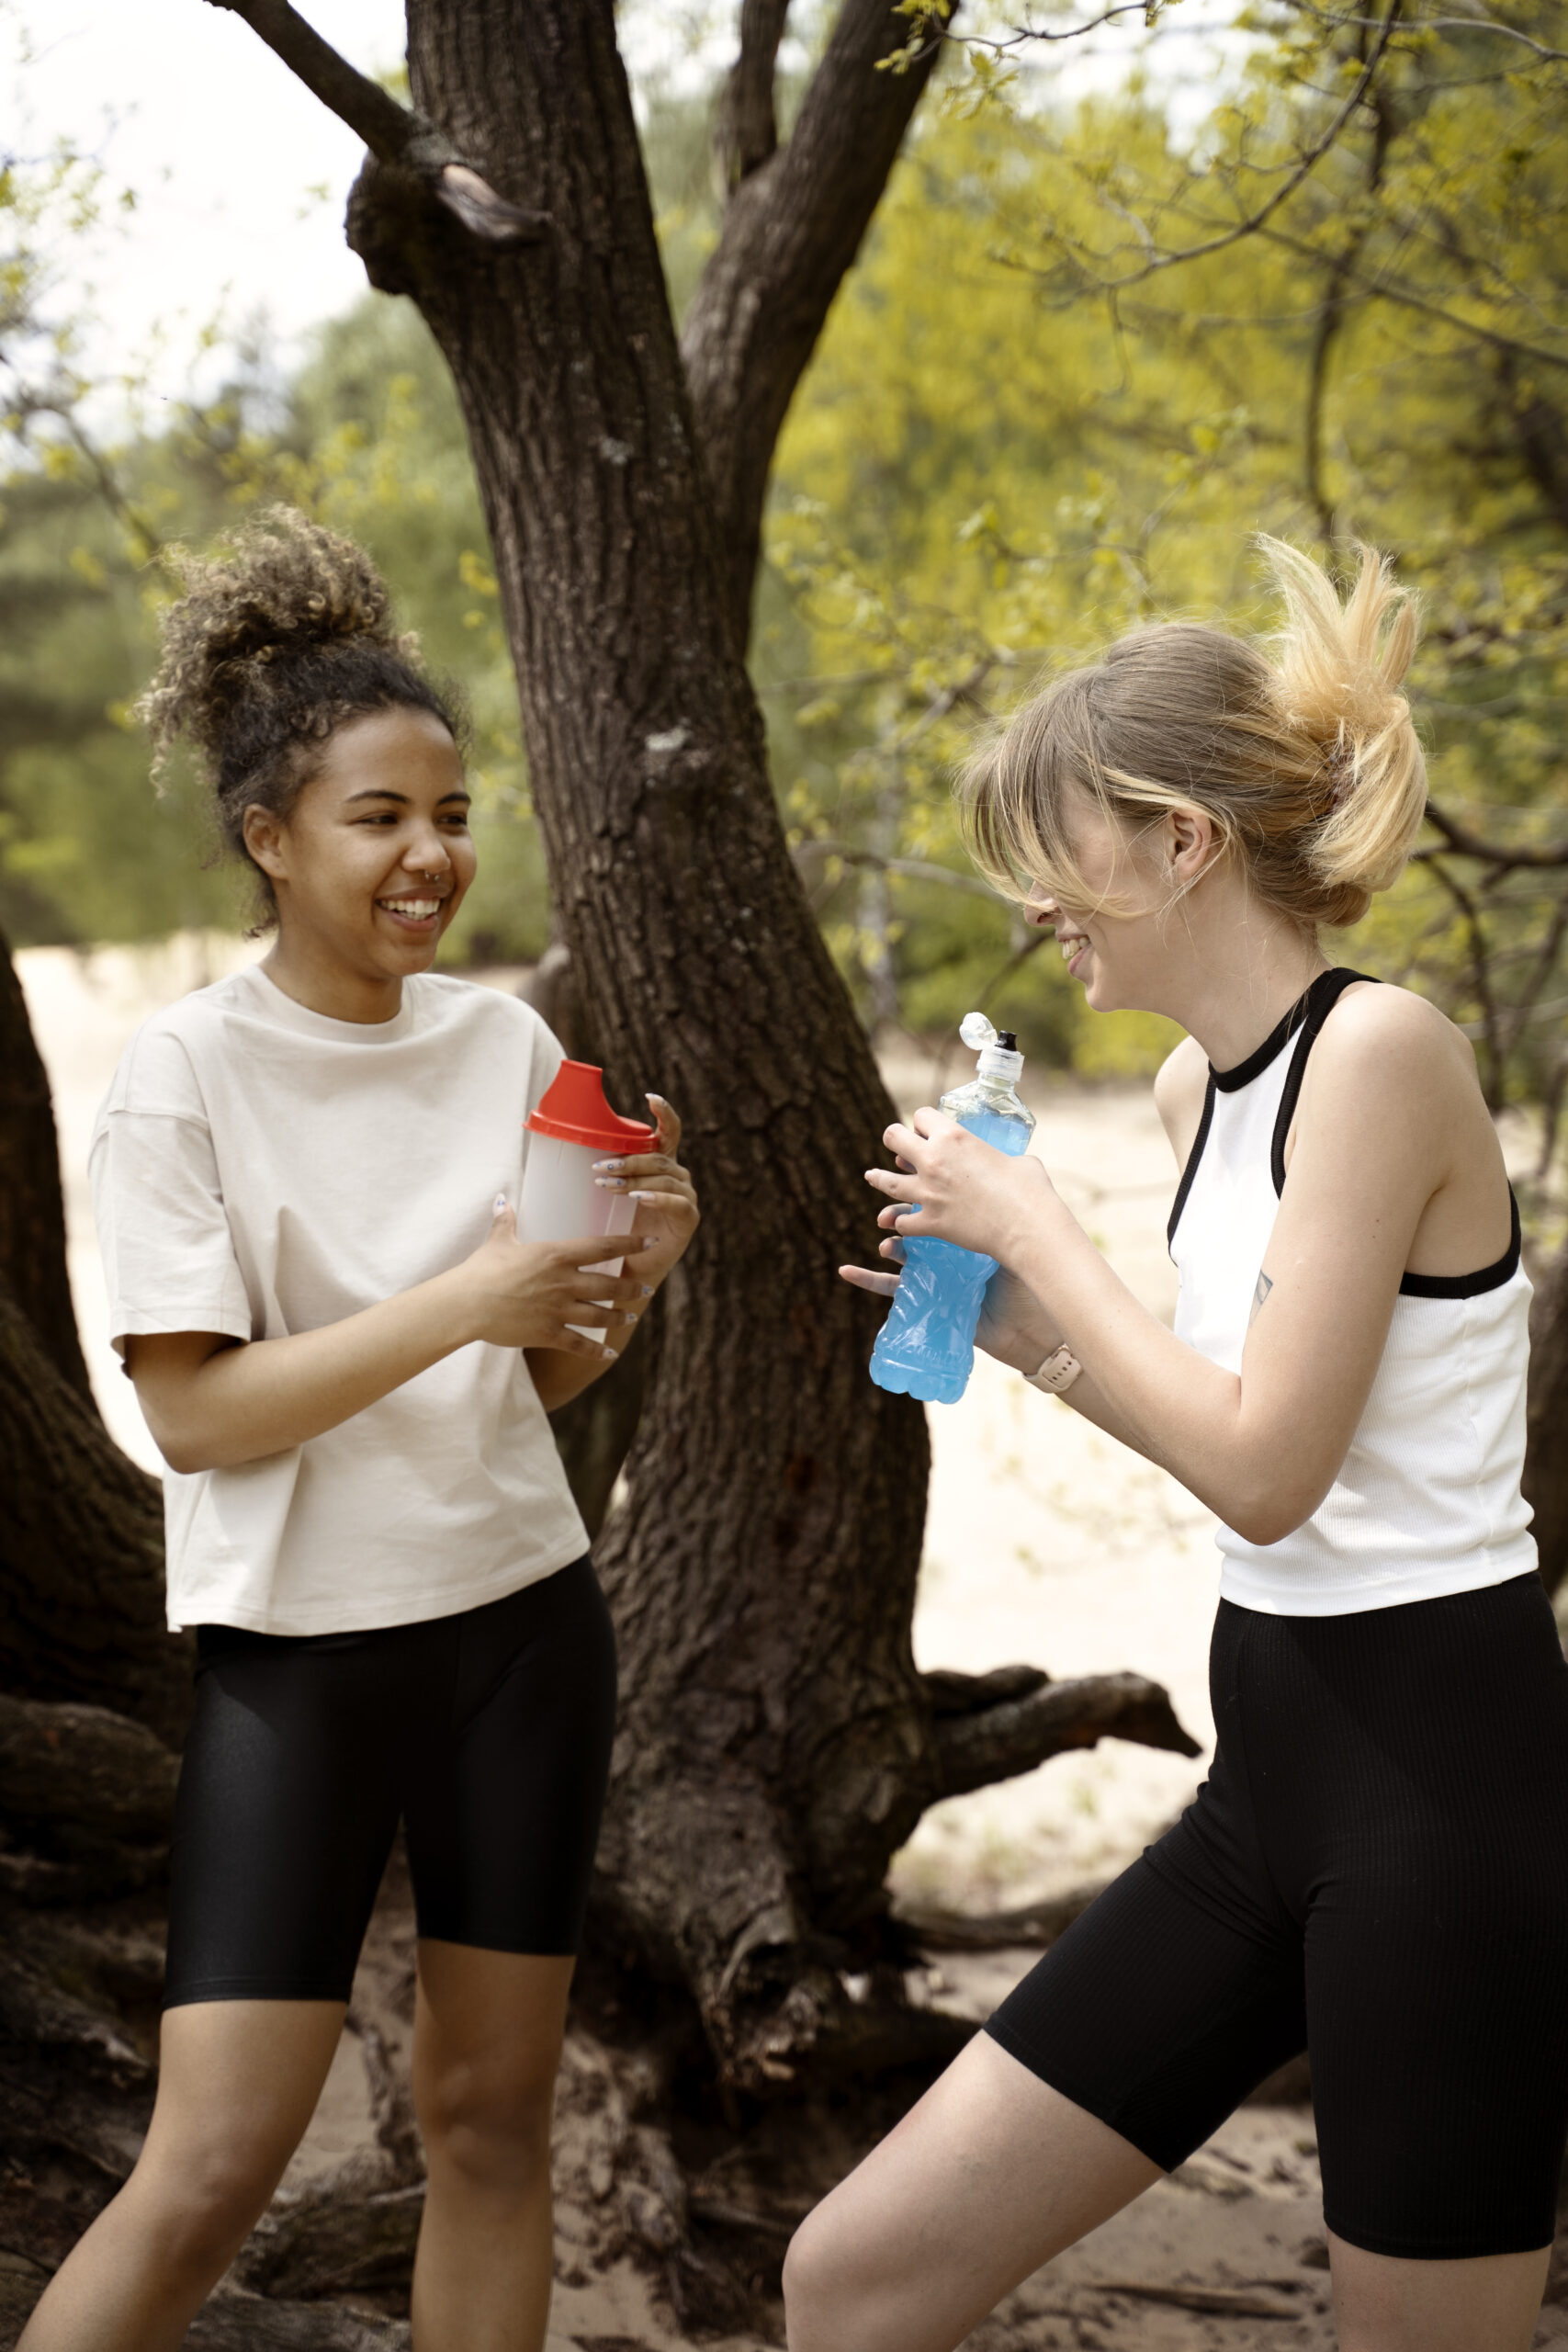 Deux femmes en tenue de sport dans une forêt buvant de l'eau dans une gourde